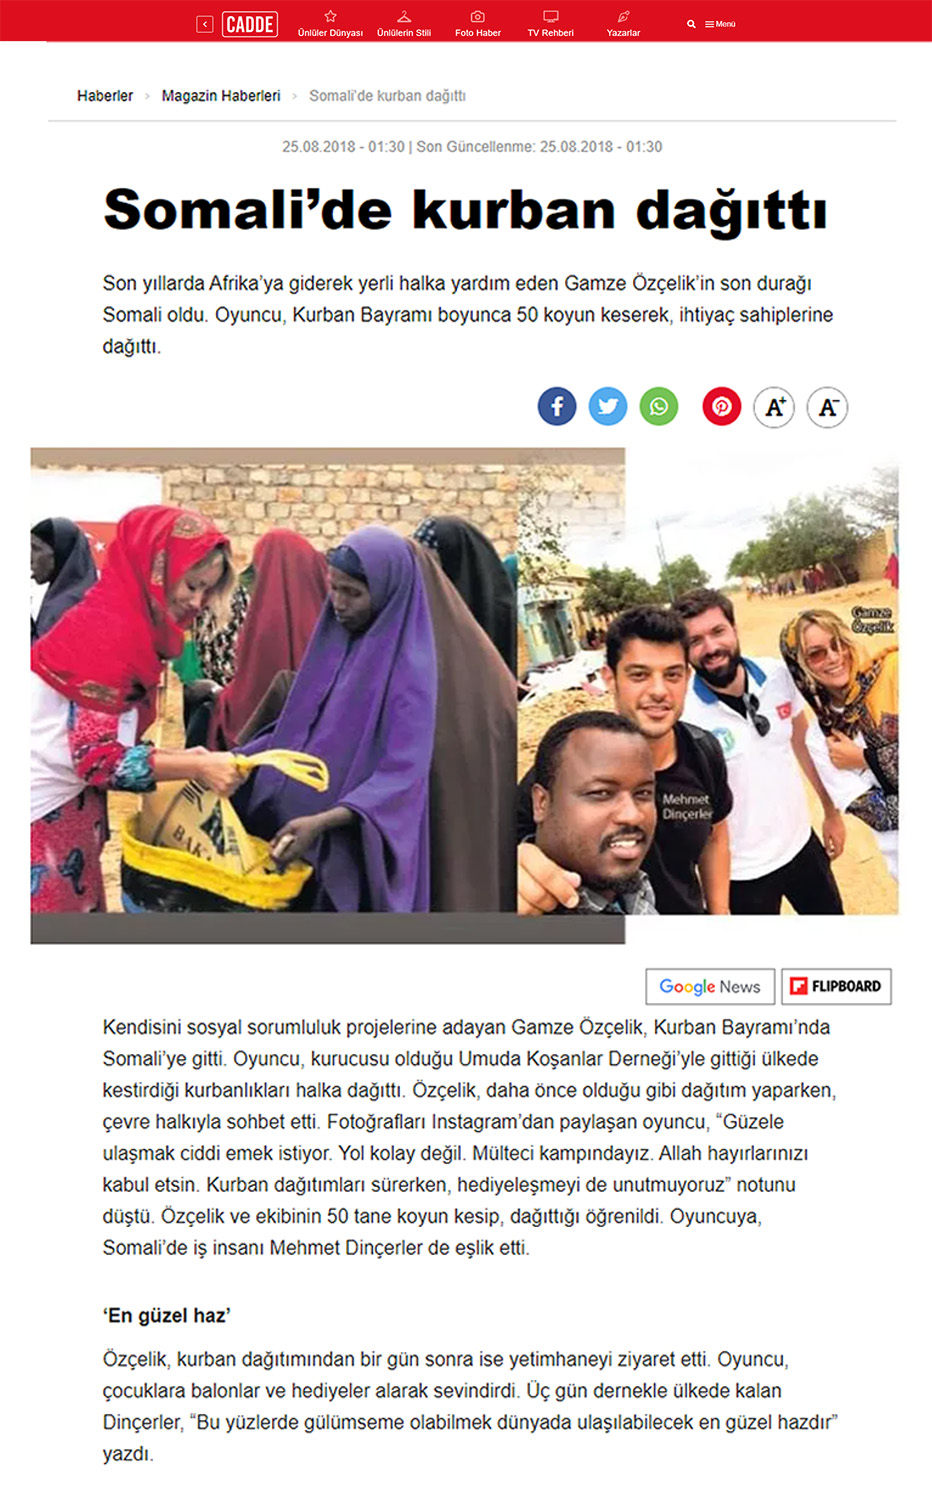 basinda - Somali’de kurban dağıttı